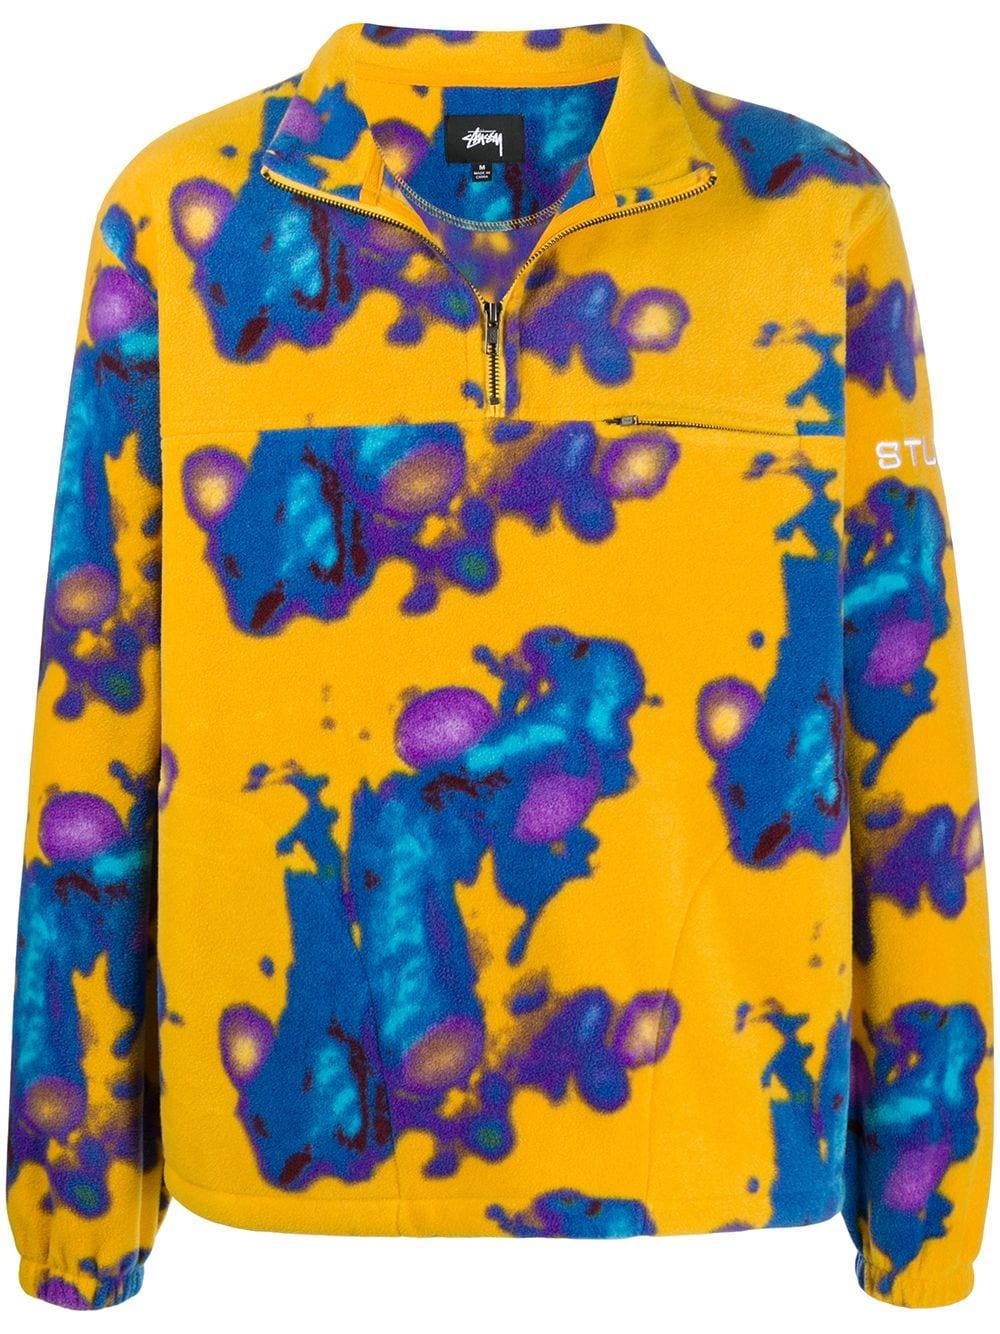 Stussy Abstract Print Fleece Henley Sweatshirt in Yellow for Men - Lyst